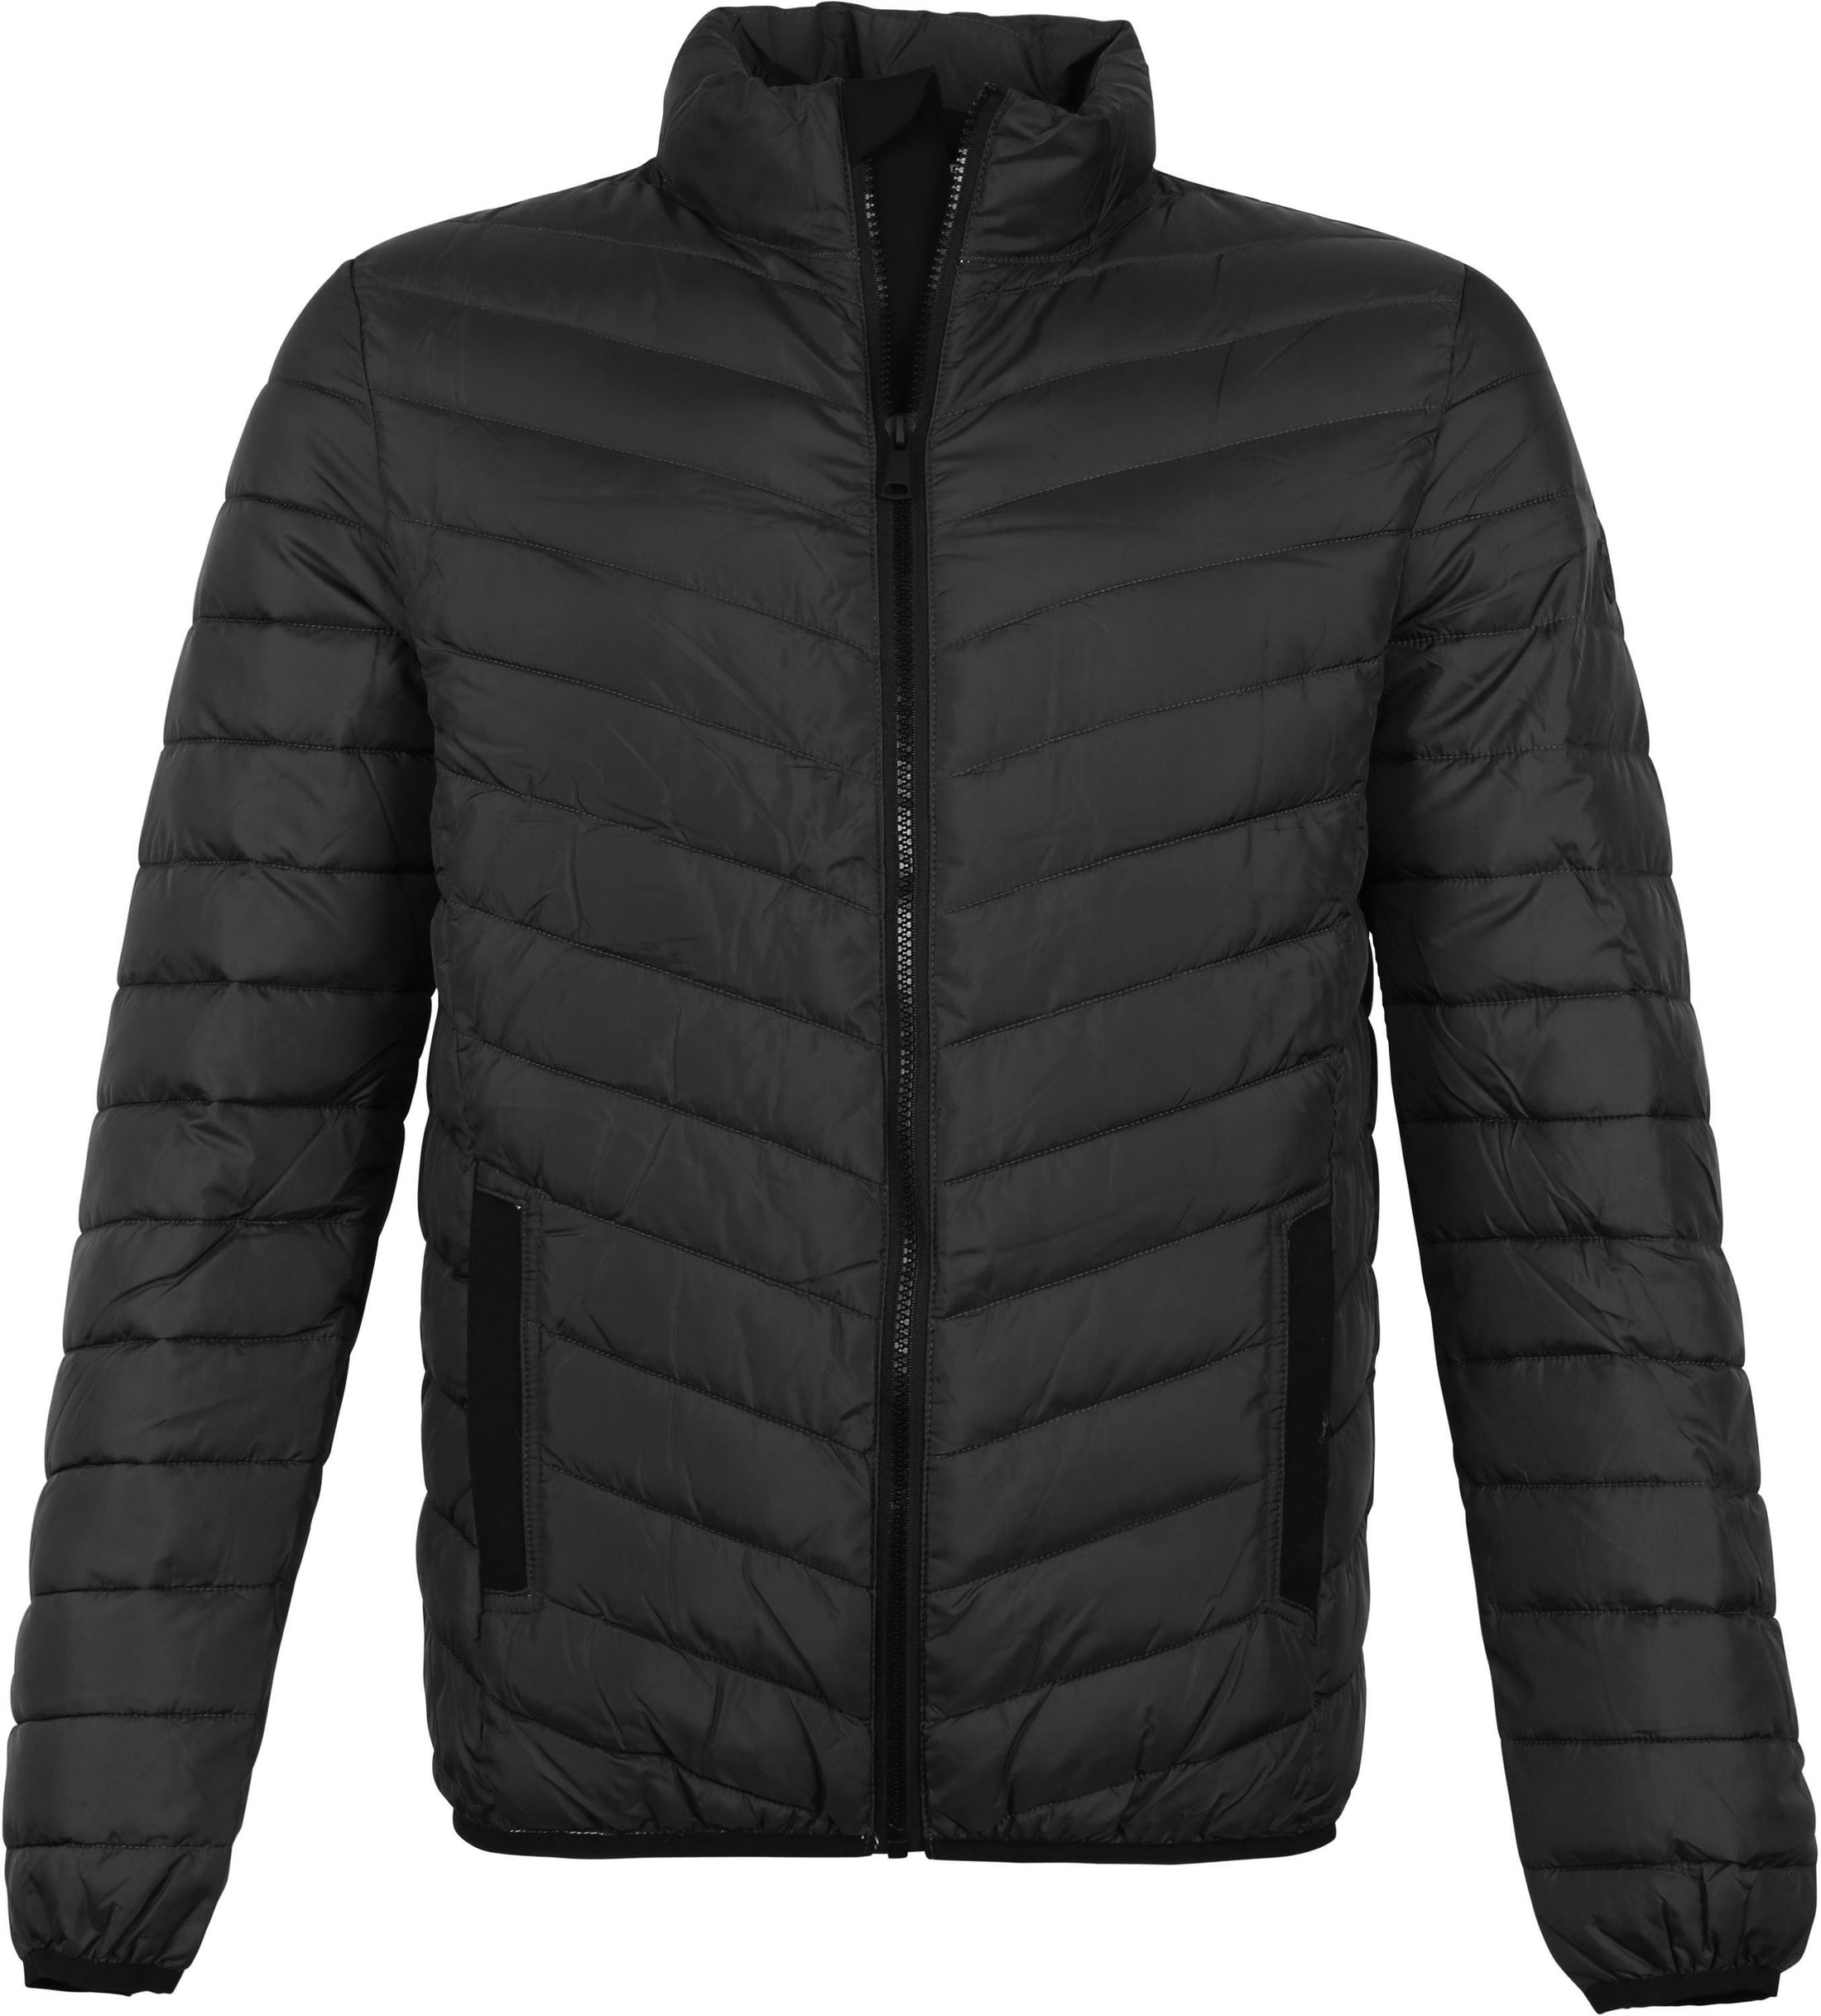 Suitable Jacket Toni 990 Black size L